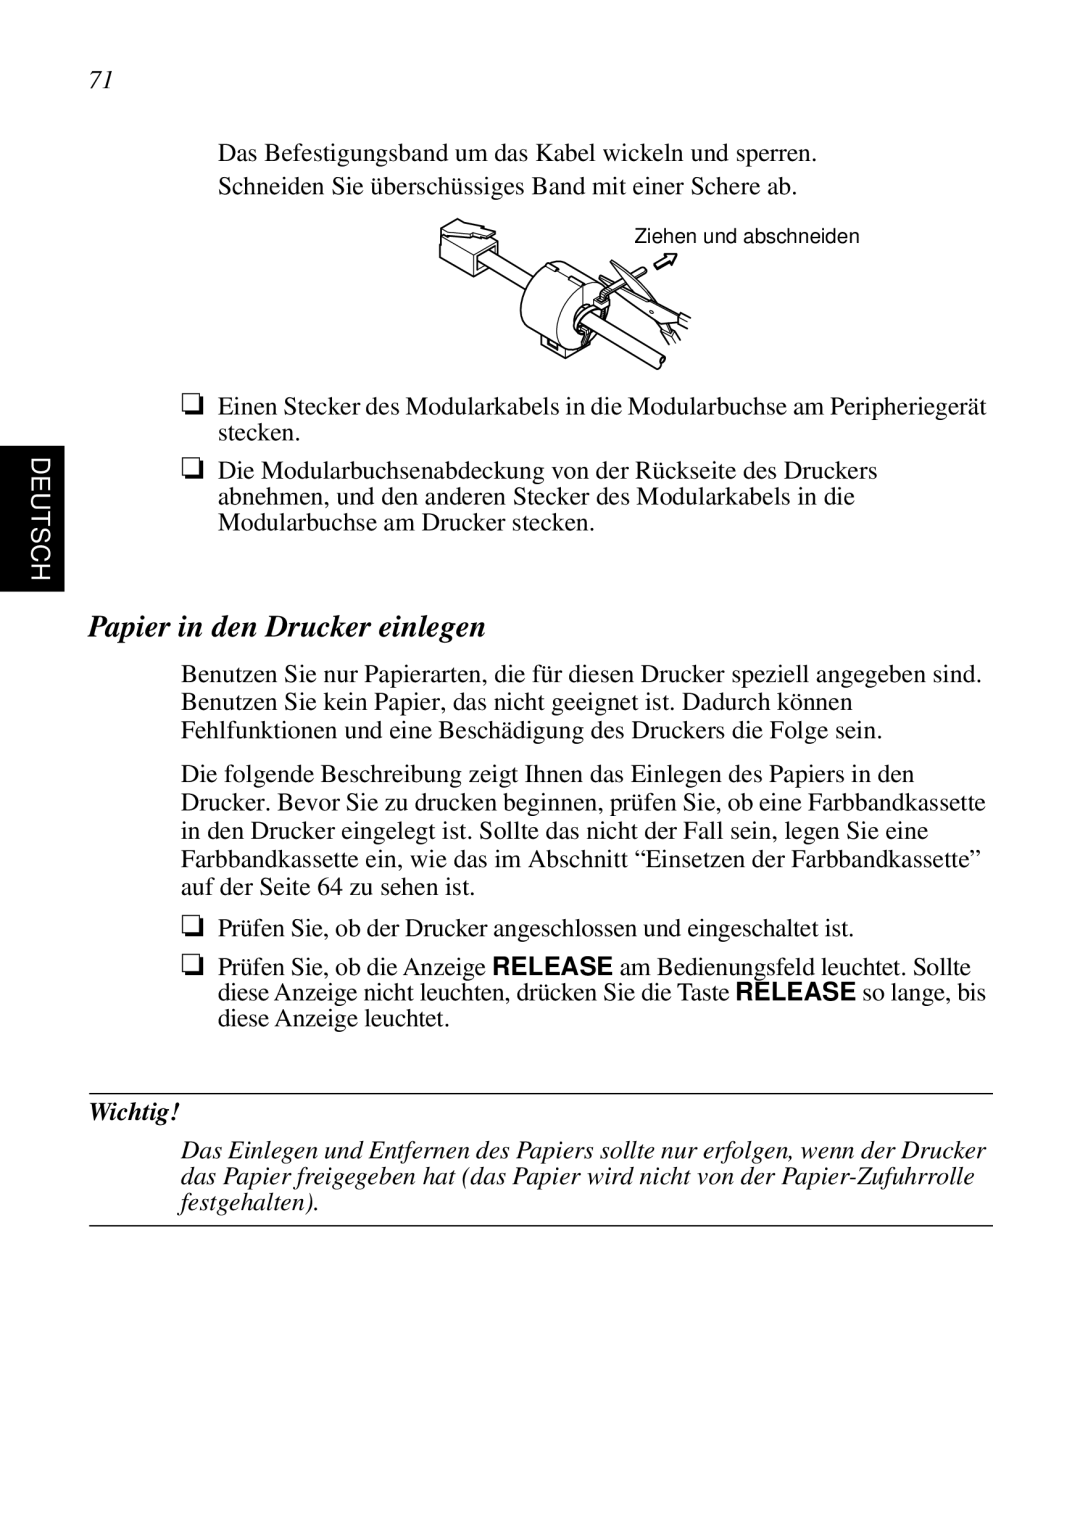 Star Micronics SP298 user manual Papier in den Drucker einlegen, Deutsch, Wichtig 